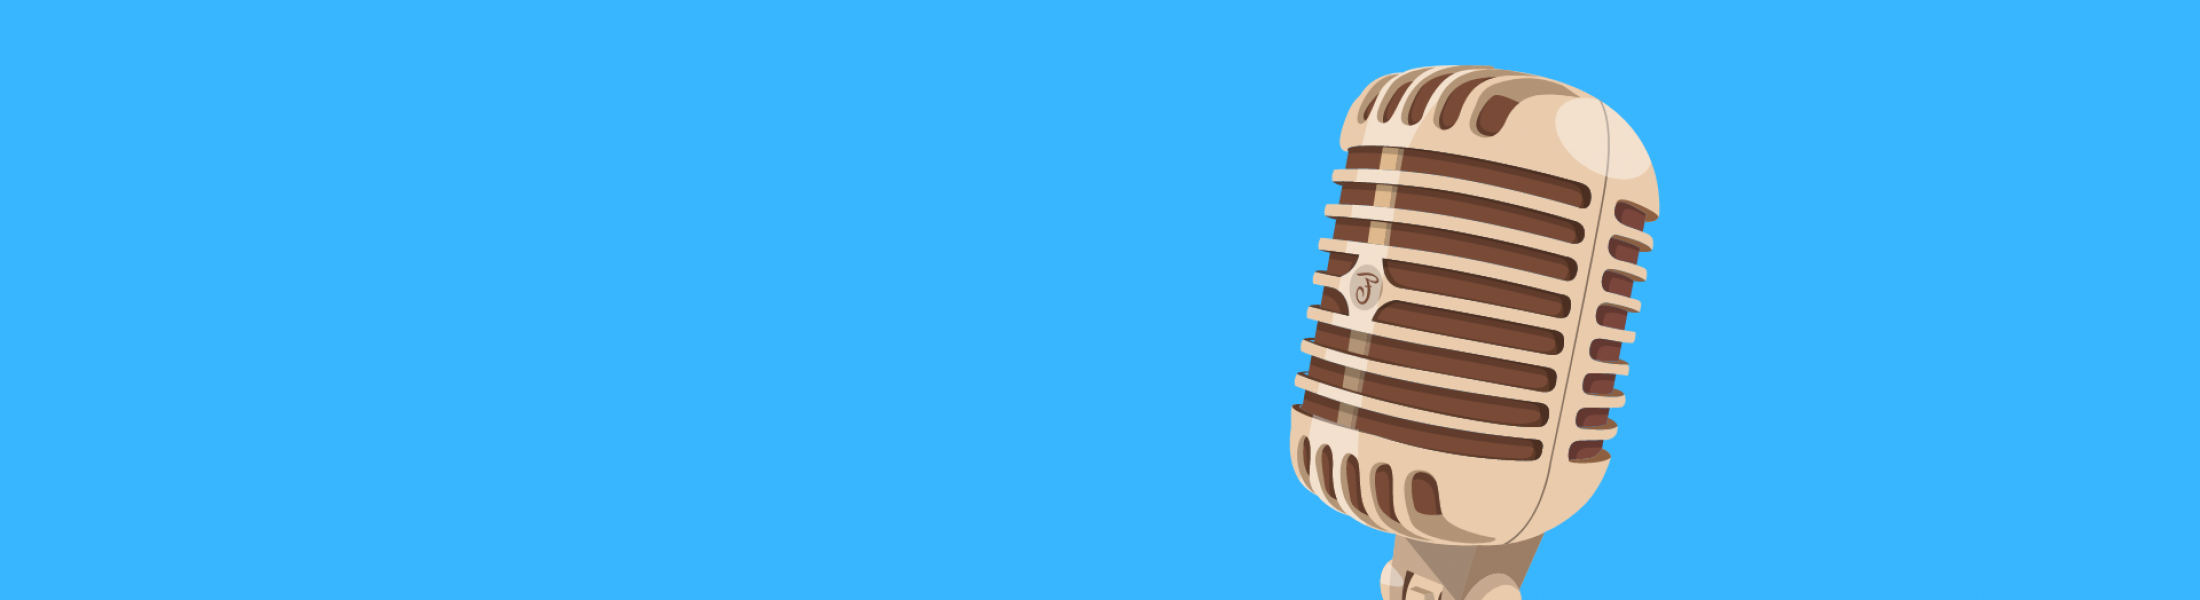 Podcasts als Mittel der Unternehmenskommunikation: Header-Bild zeigt ein klassisches Mikrofon vor blauem Grund